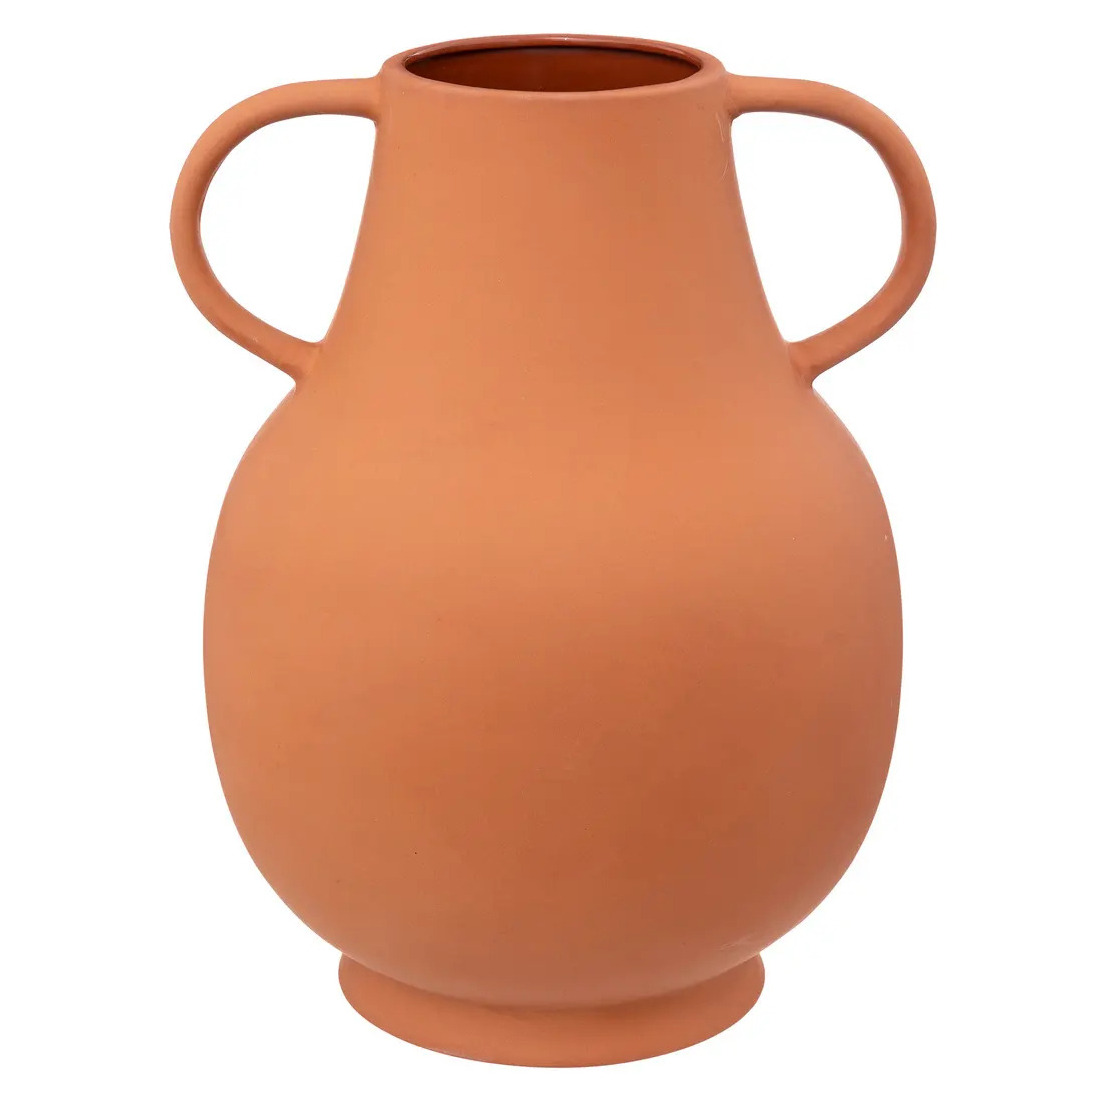 atmosphera Terakotta-Vase mit Griffen, 33 cm